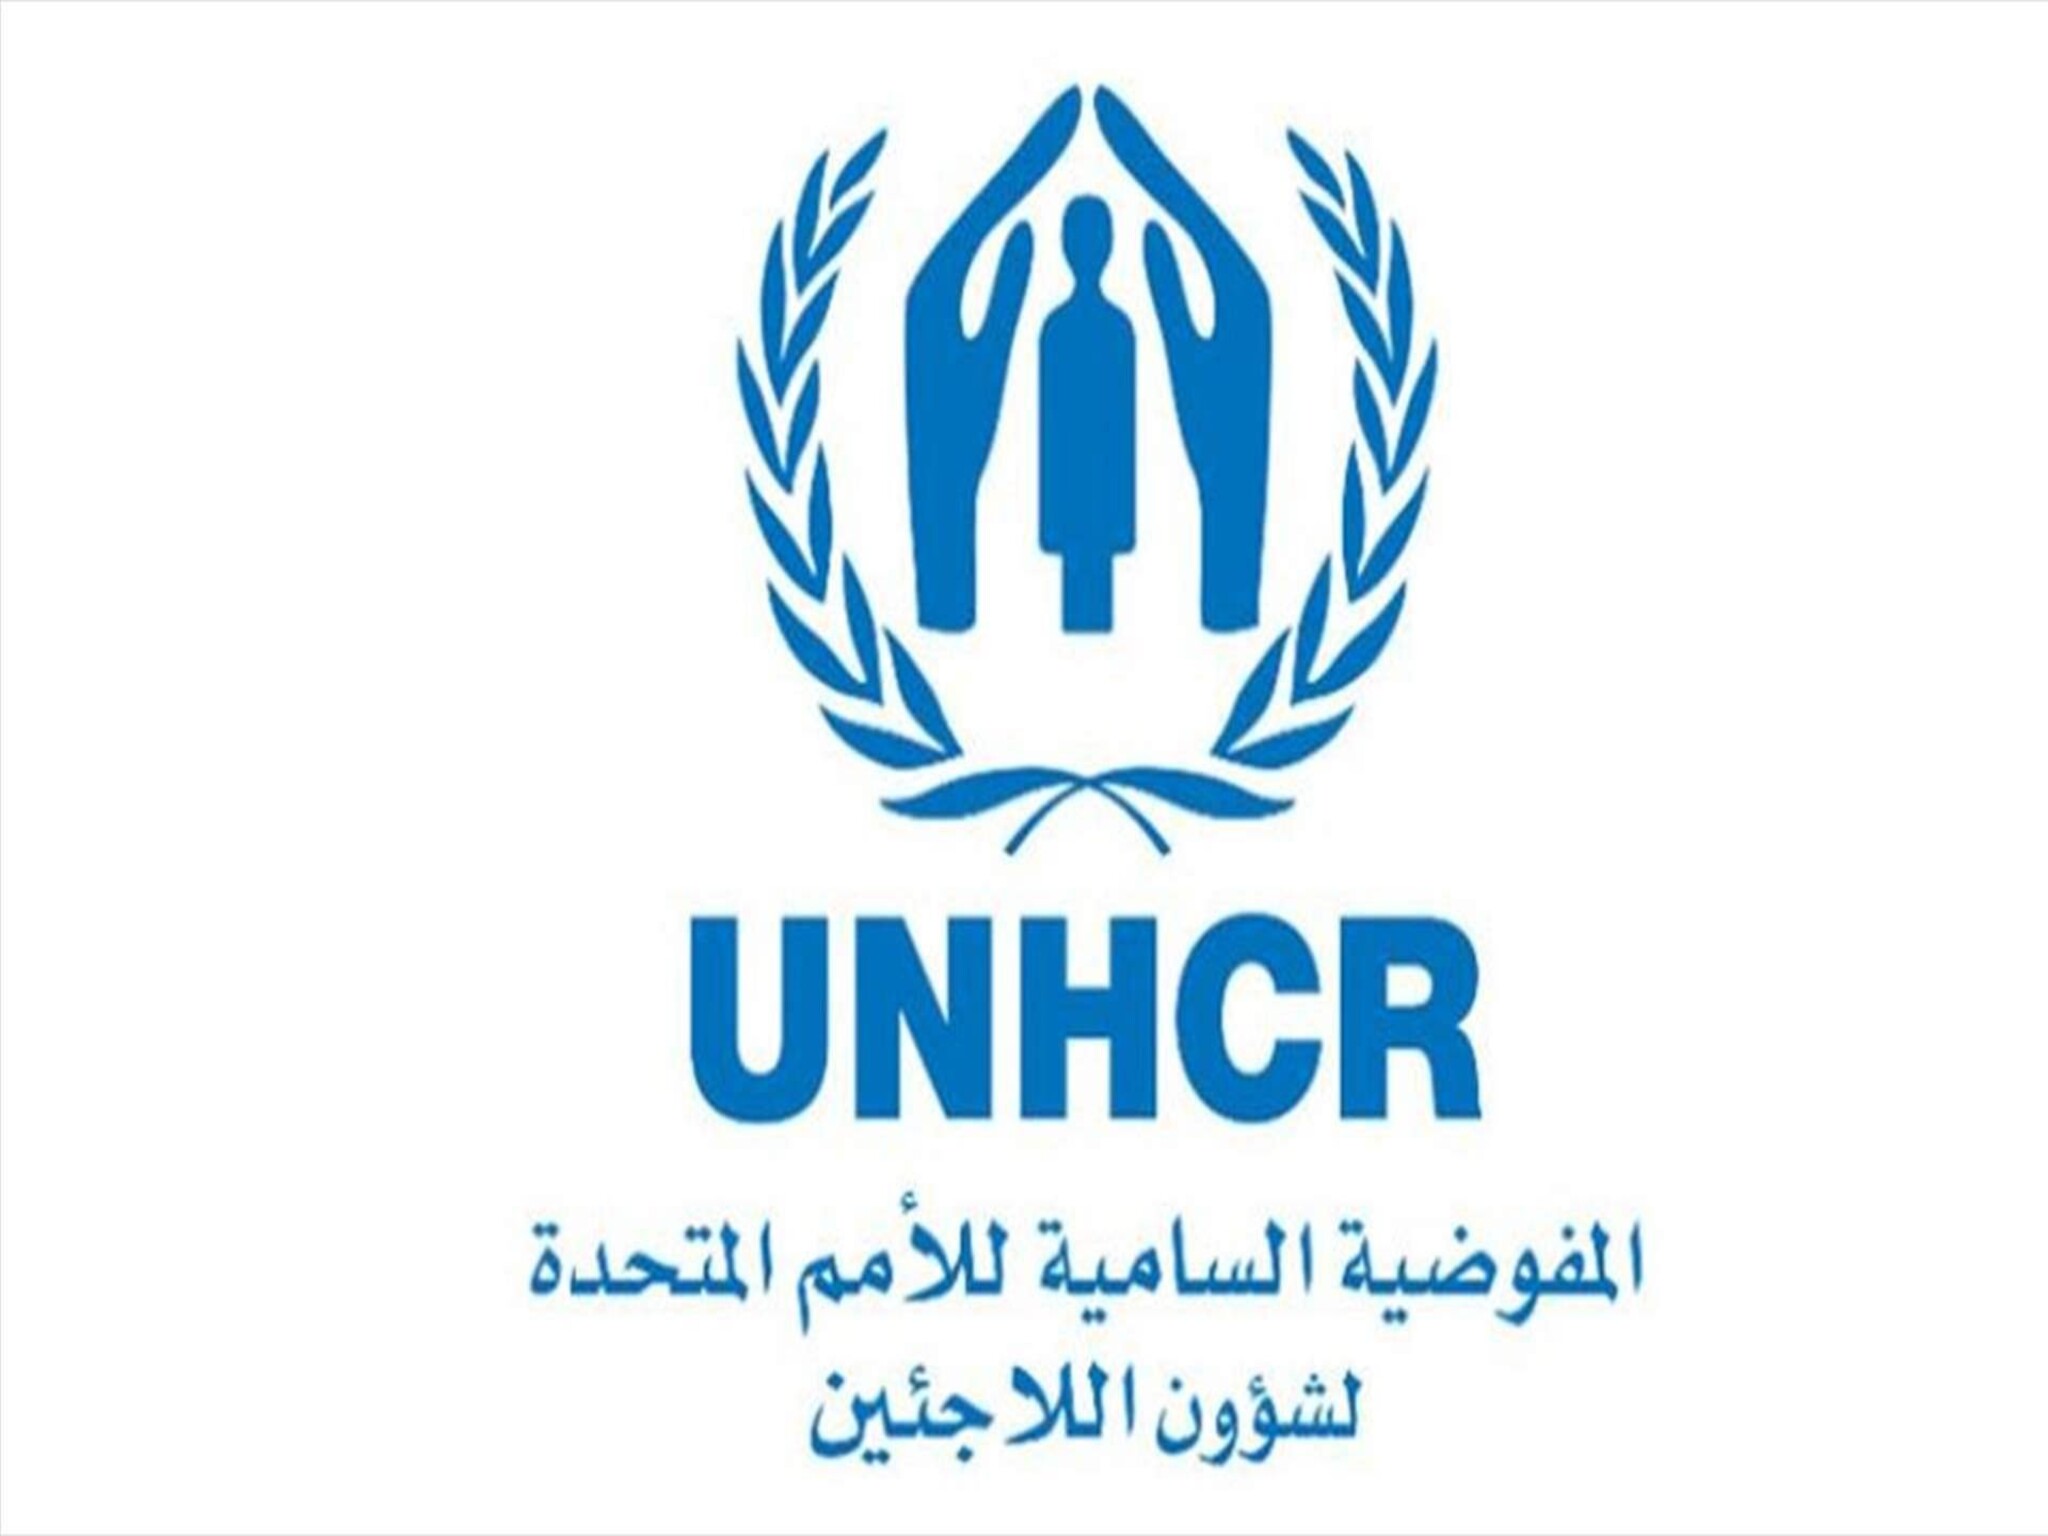 خطوات التسجيل في مفوضية لشؤون لاجئين في السعودية 2023-1444 وأهم الشروط